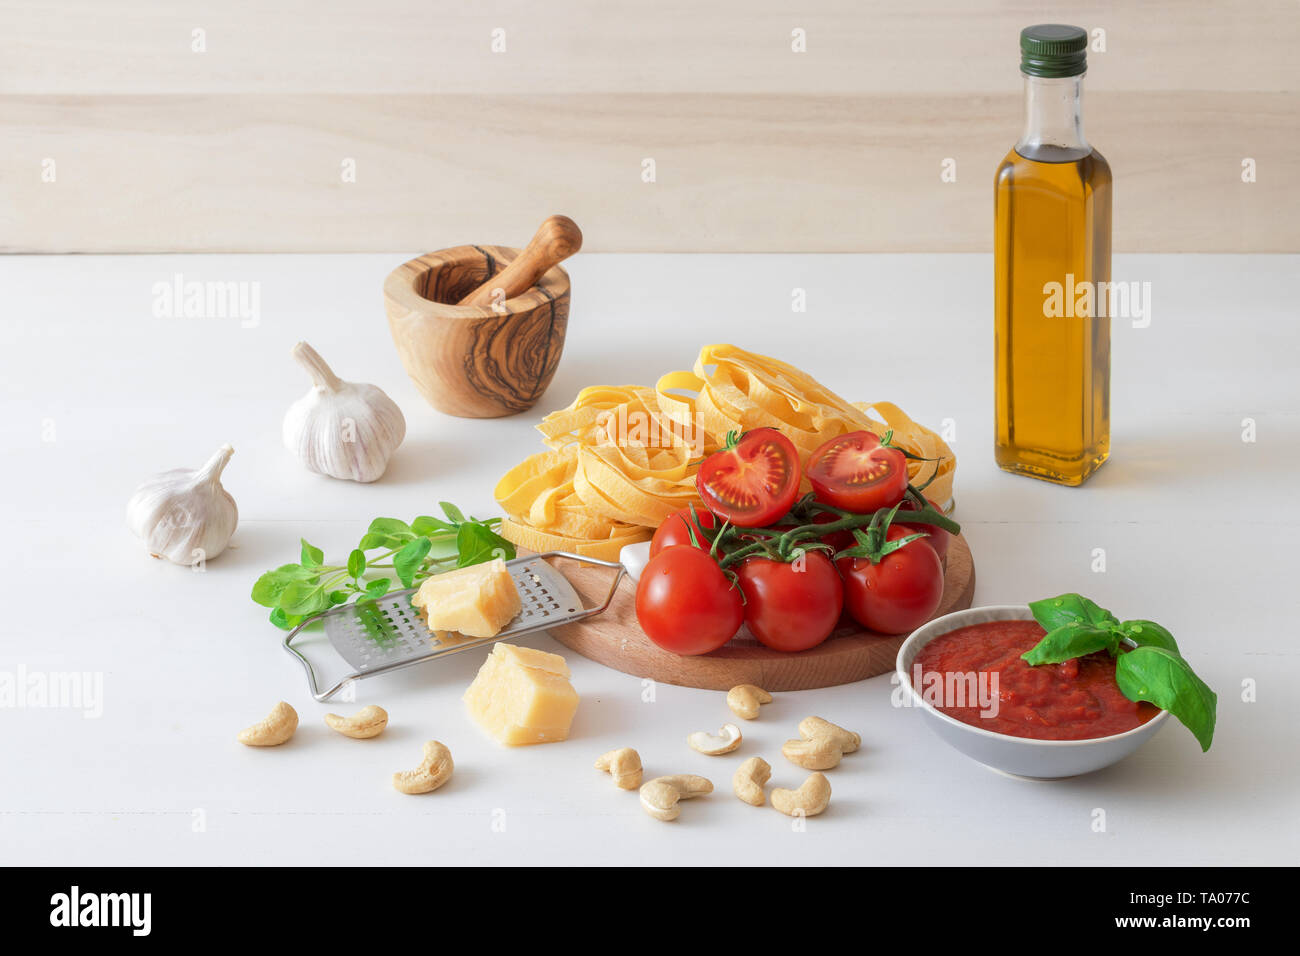 Tabelle mit Zutaten Tomaten pesto machen. Tomaten, Knoblauch, frischer Oregano und Basilikum Kräuter, eine Flasche Olivenöl, paar Cashewnüsse, Parmesan, c Stockfoto